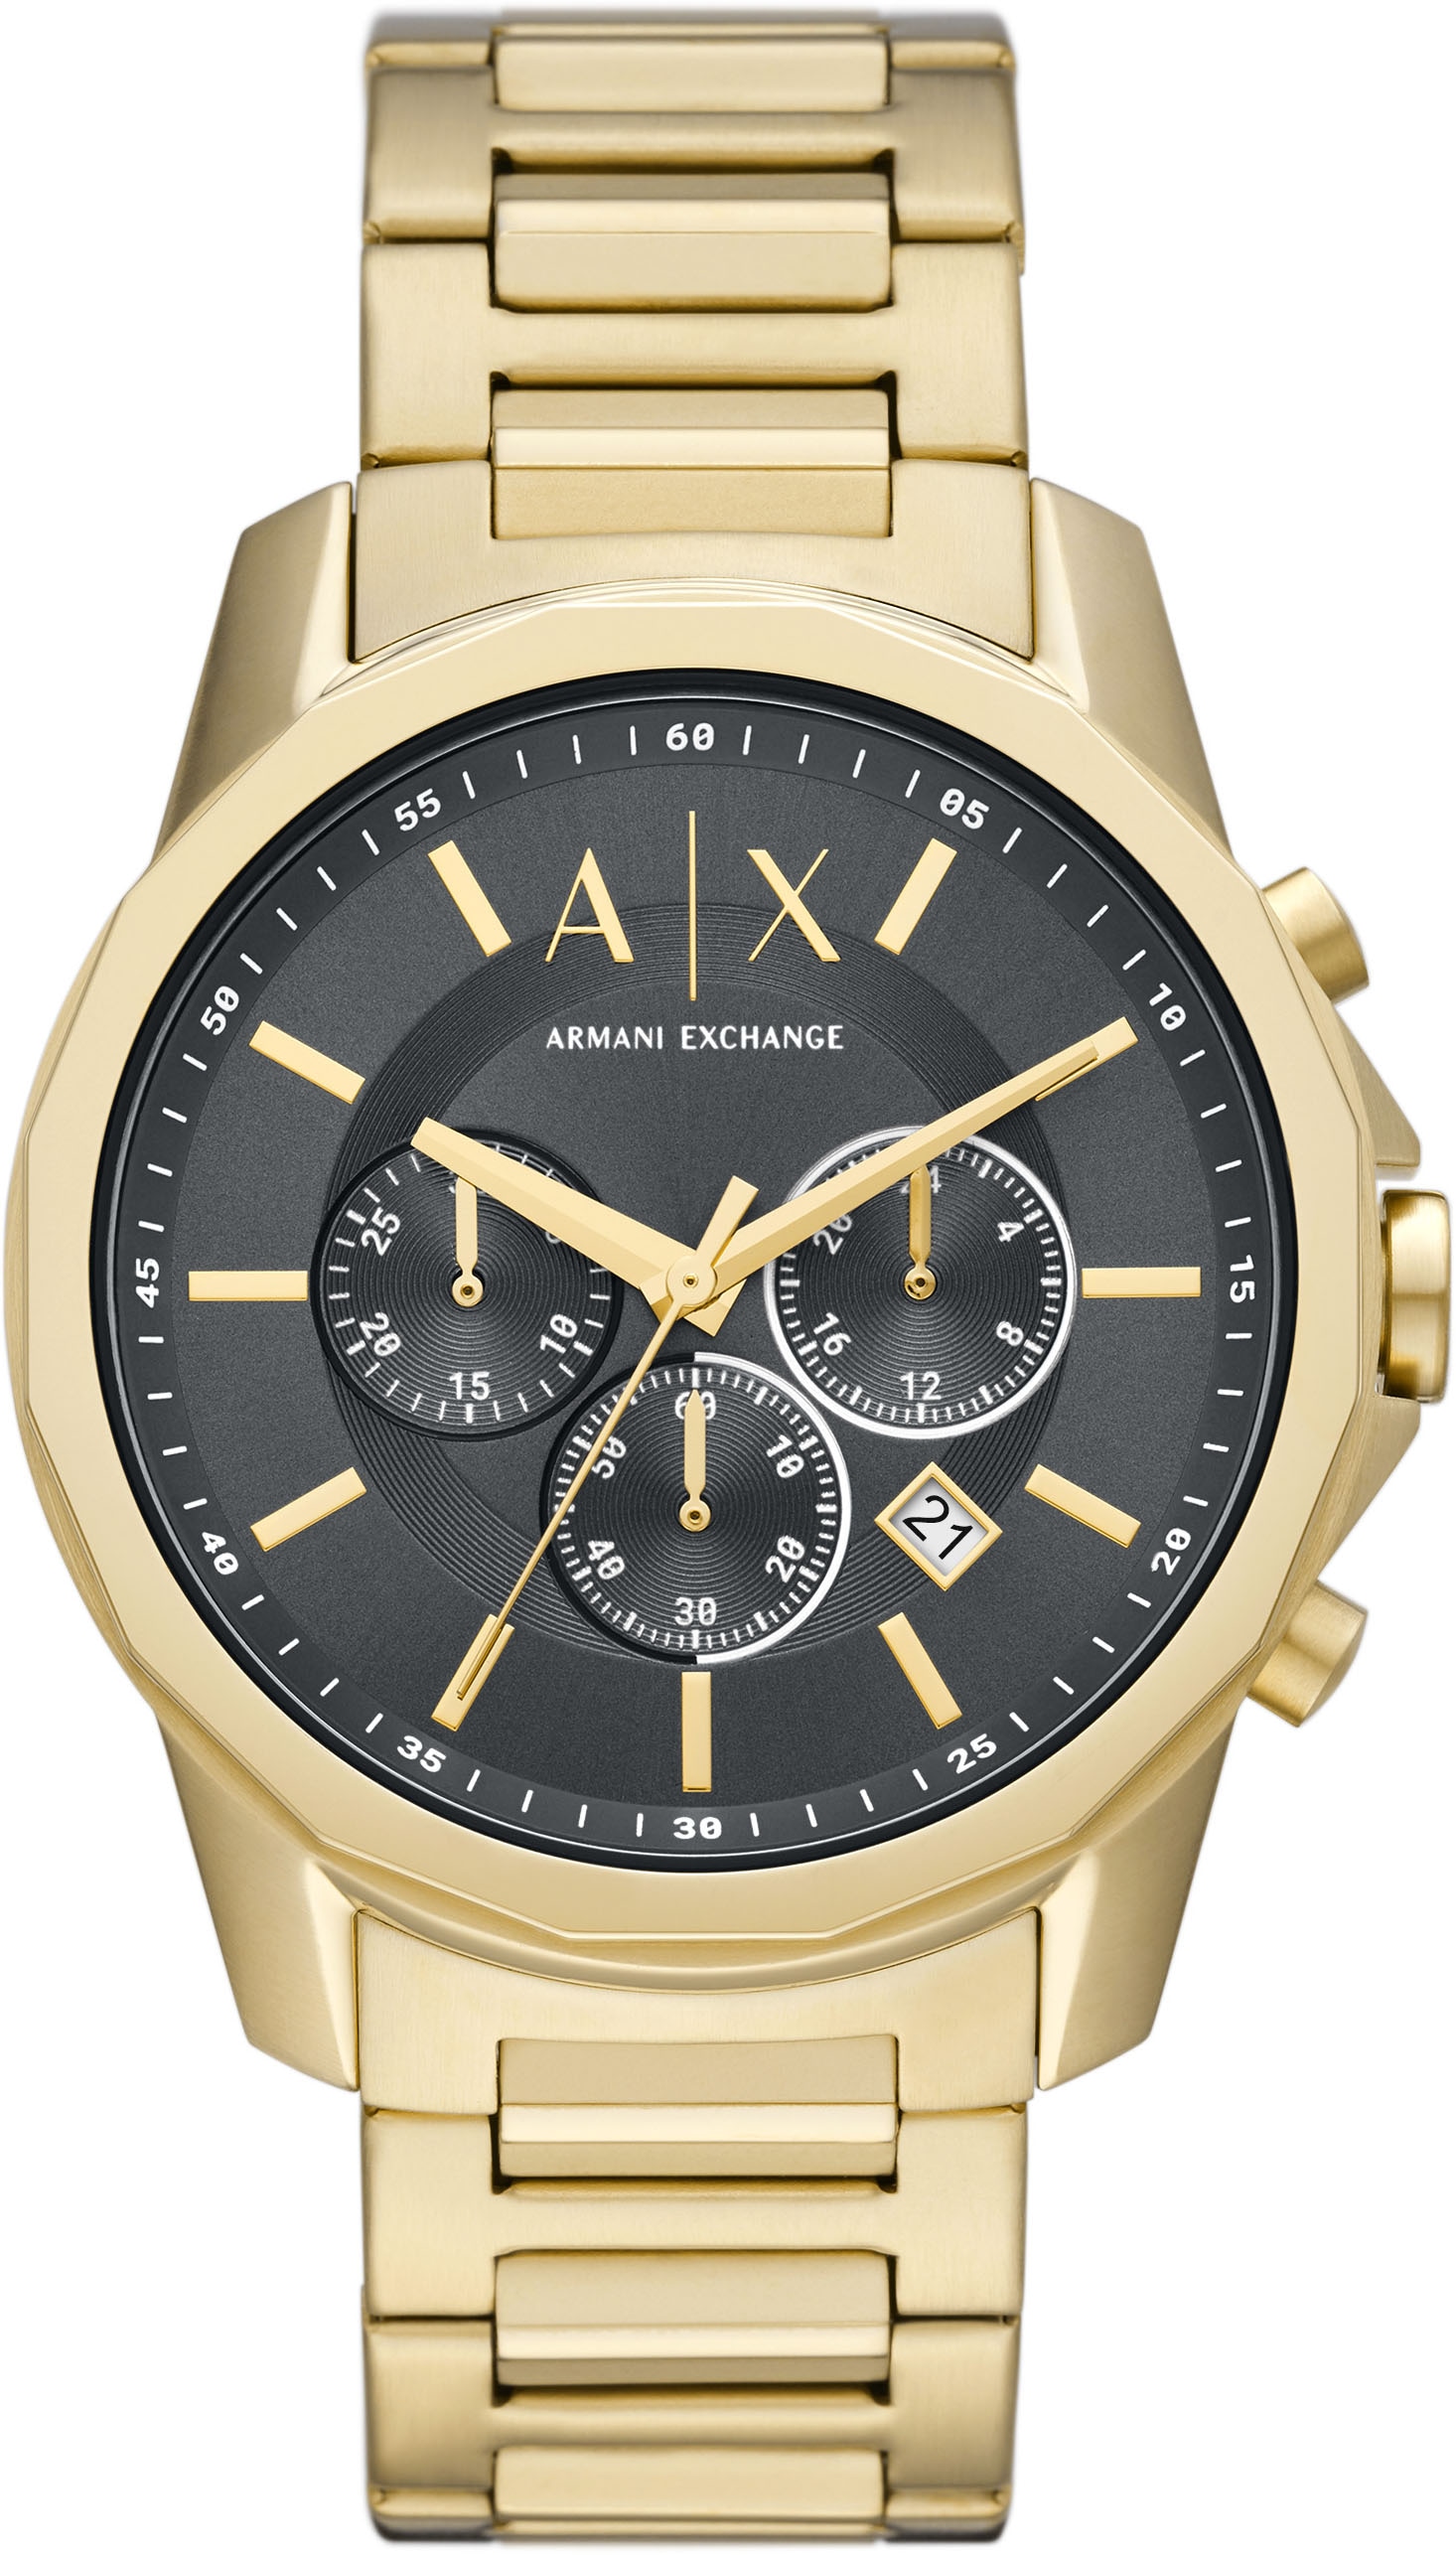 ARMANI EXCHANGE Chronograph »AX1721« online kaufen | BAUR